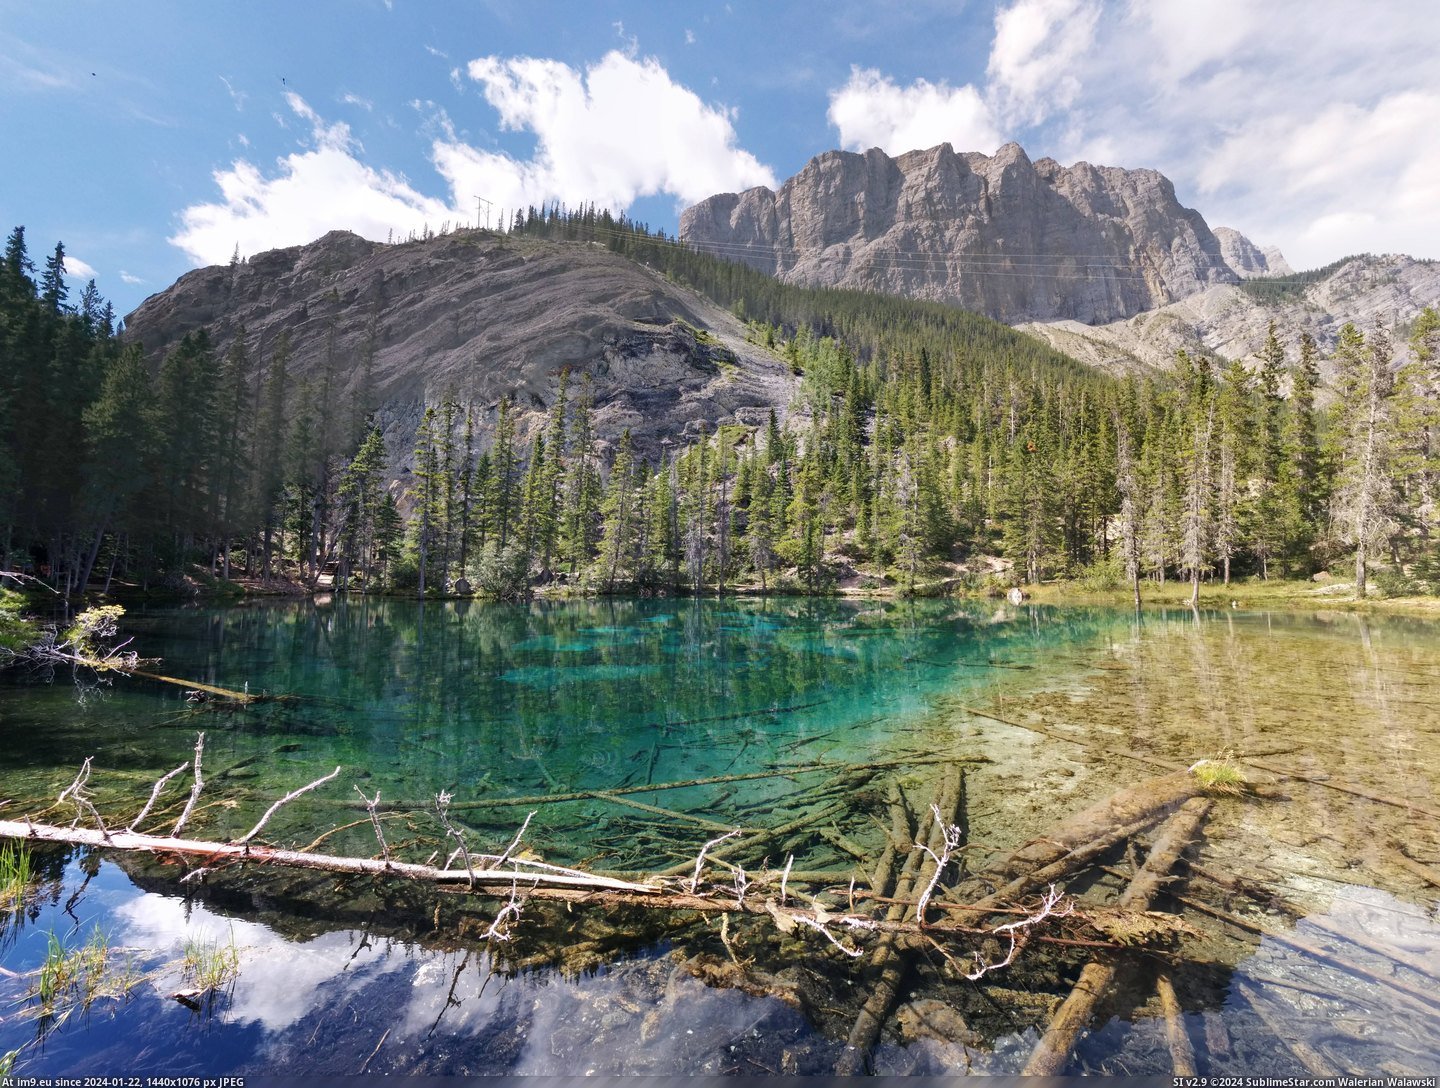 #Alberta #Grassi #Canmore #Lakes [Earthporn] Grassi Lakes, Canmore, Alberta [7098x5316][OC] Pic. (Obraz z album My r/EARTHPORN favs))